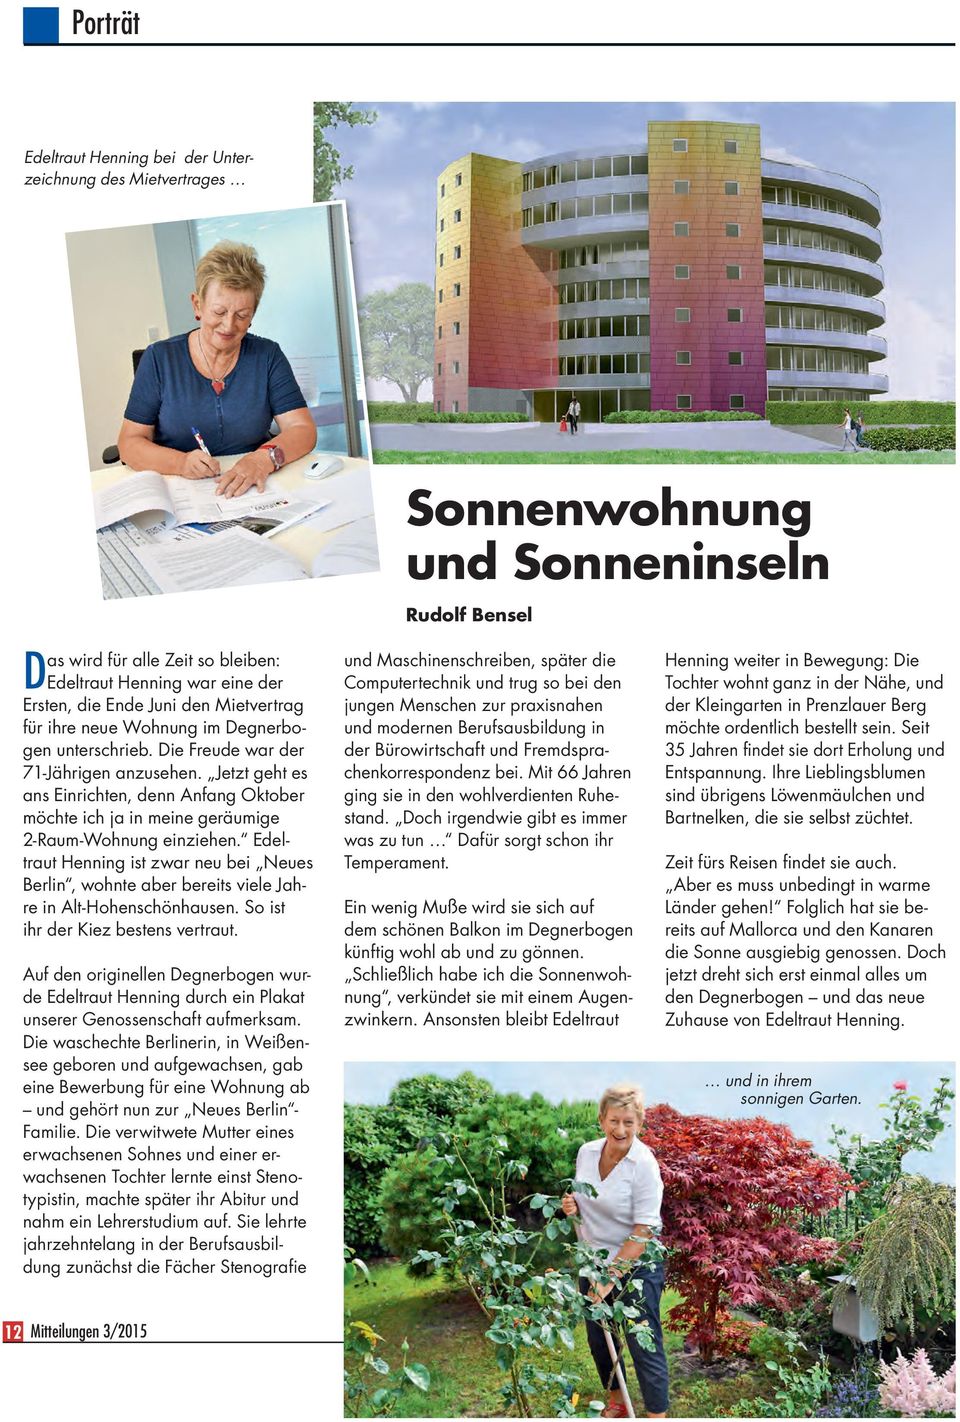 Edeltraut Henning ist zwar neu bei Neues Berlin, wohnte aber bereits viele Jahre in Alt-Hohenschönhausen. So ist ihr der Kiez bestens vertraut.